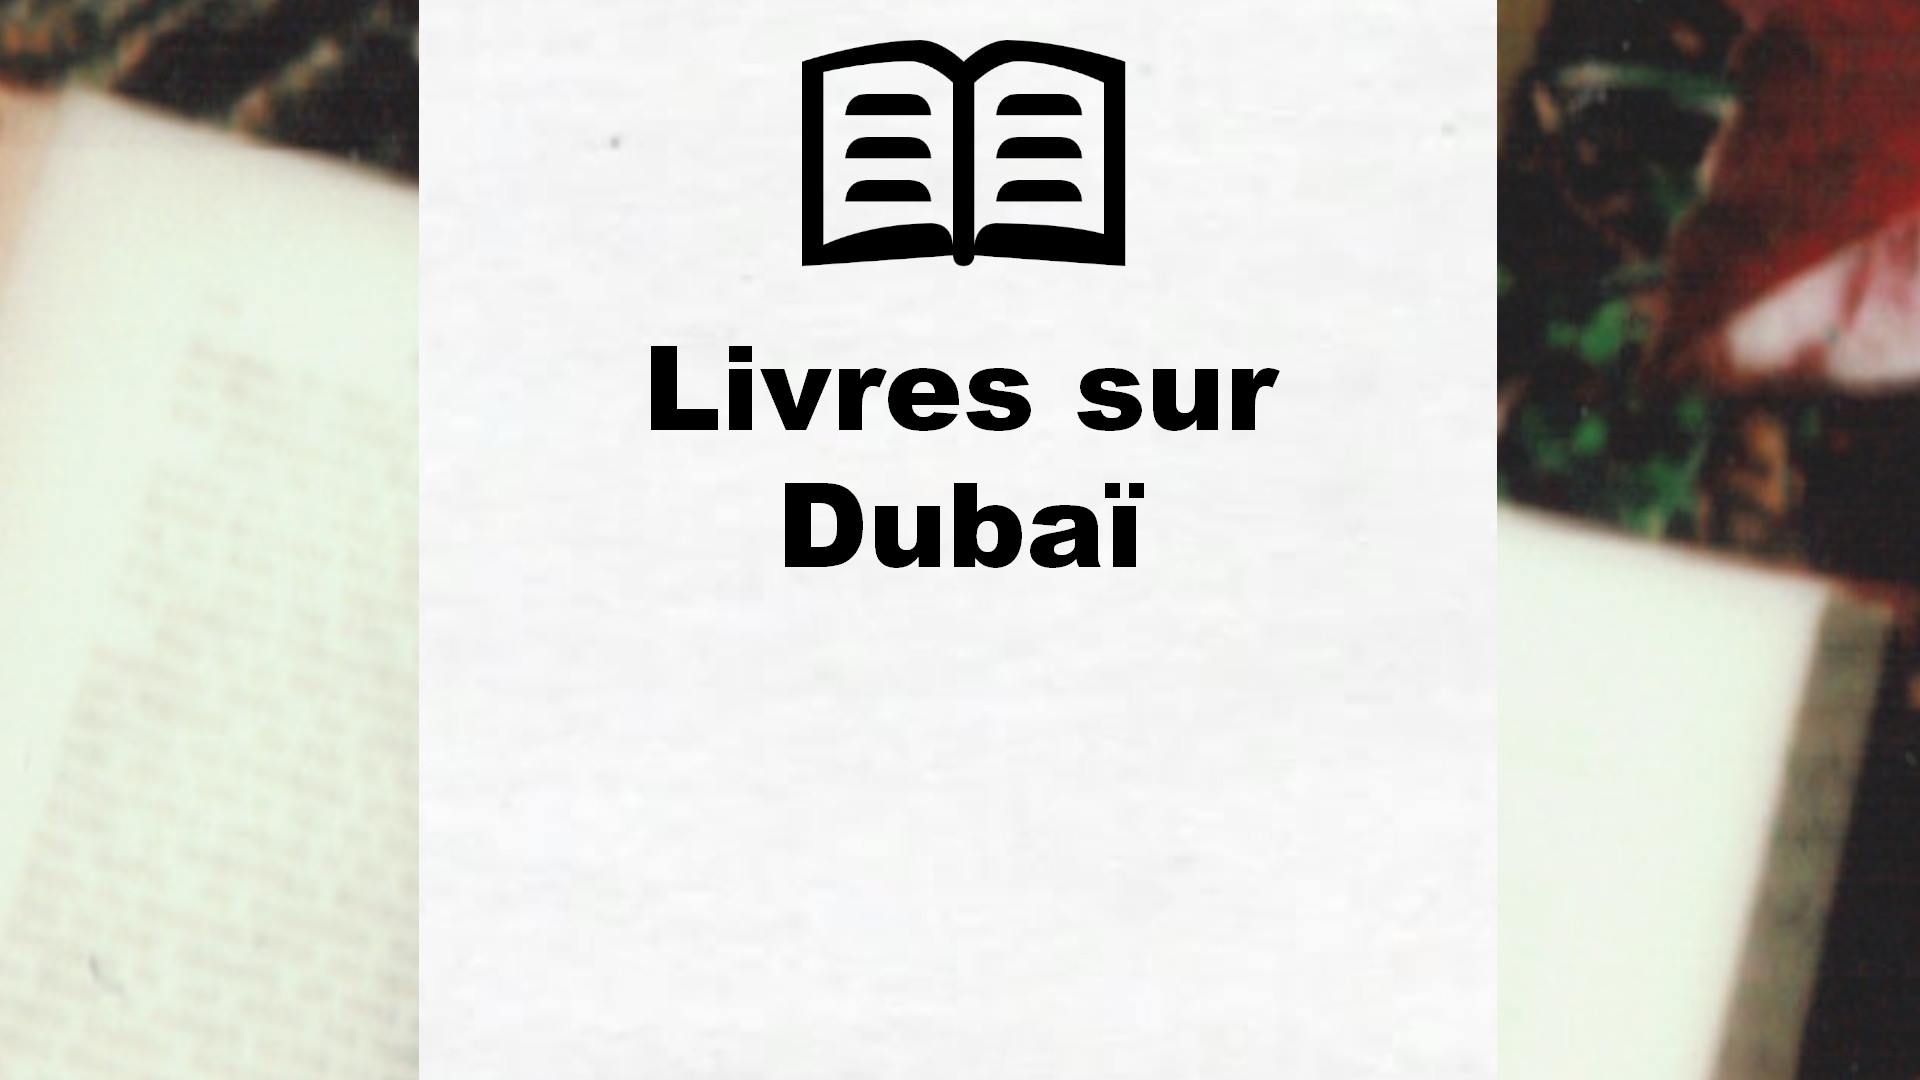 Livres sur Dubaï